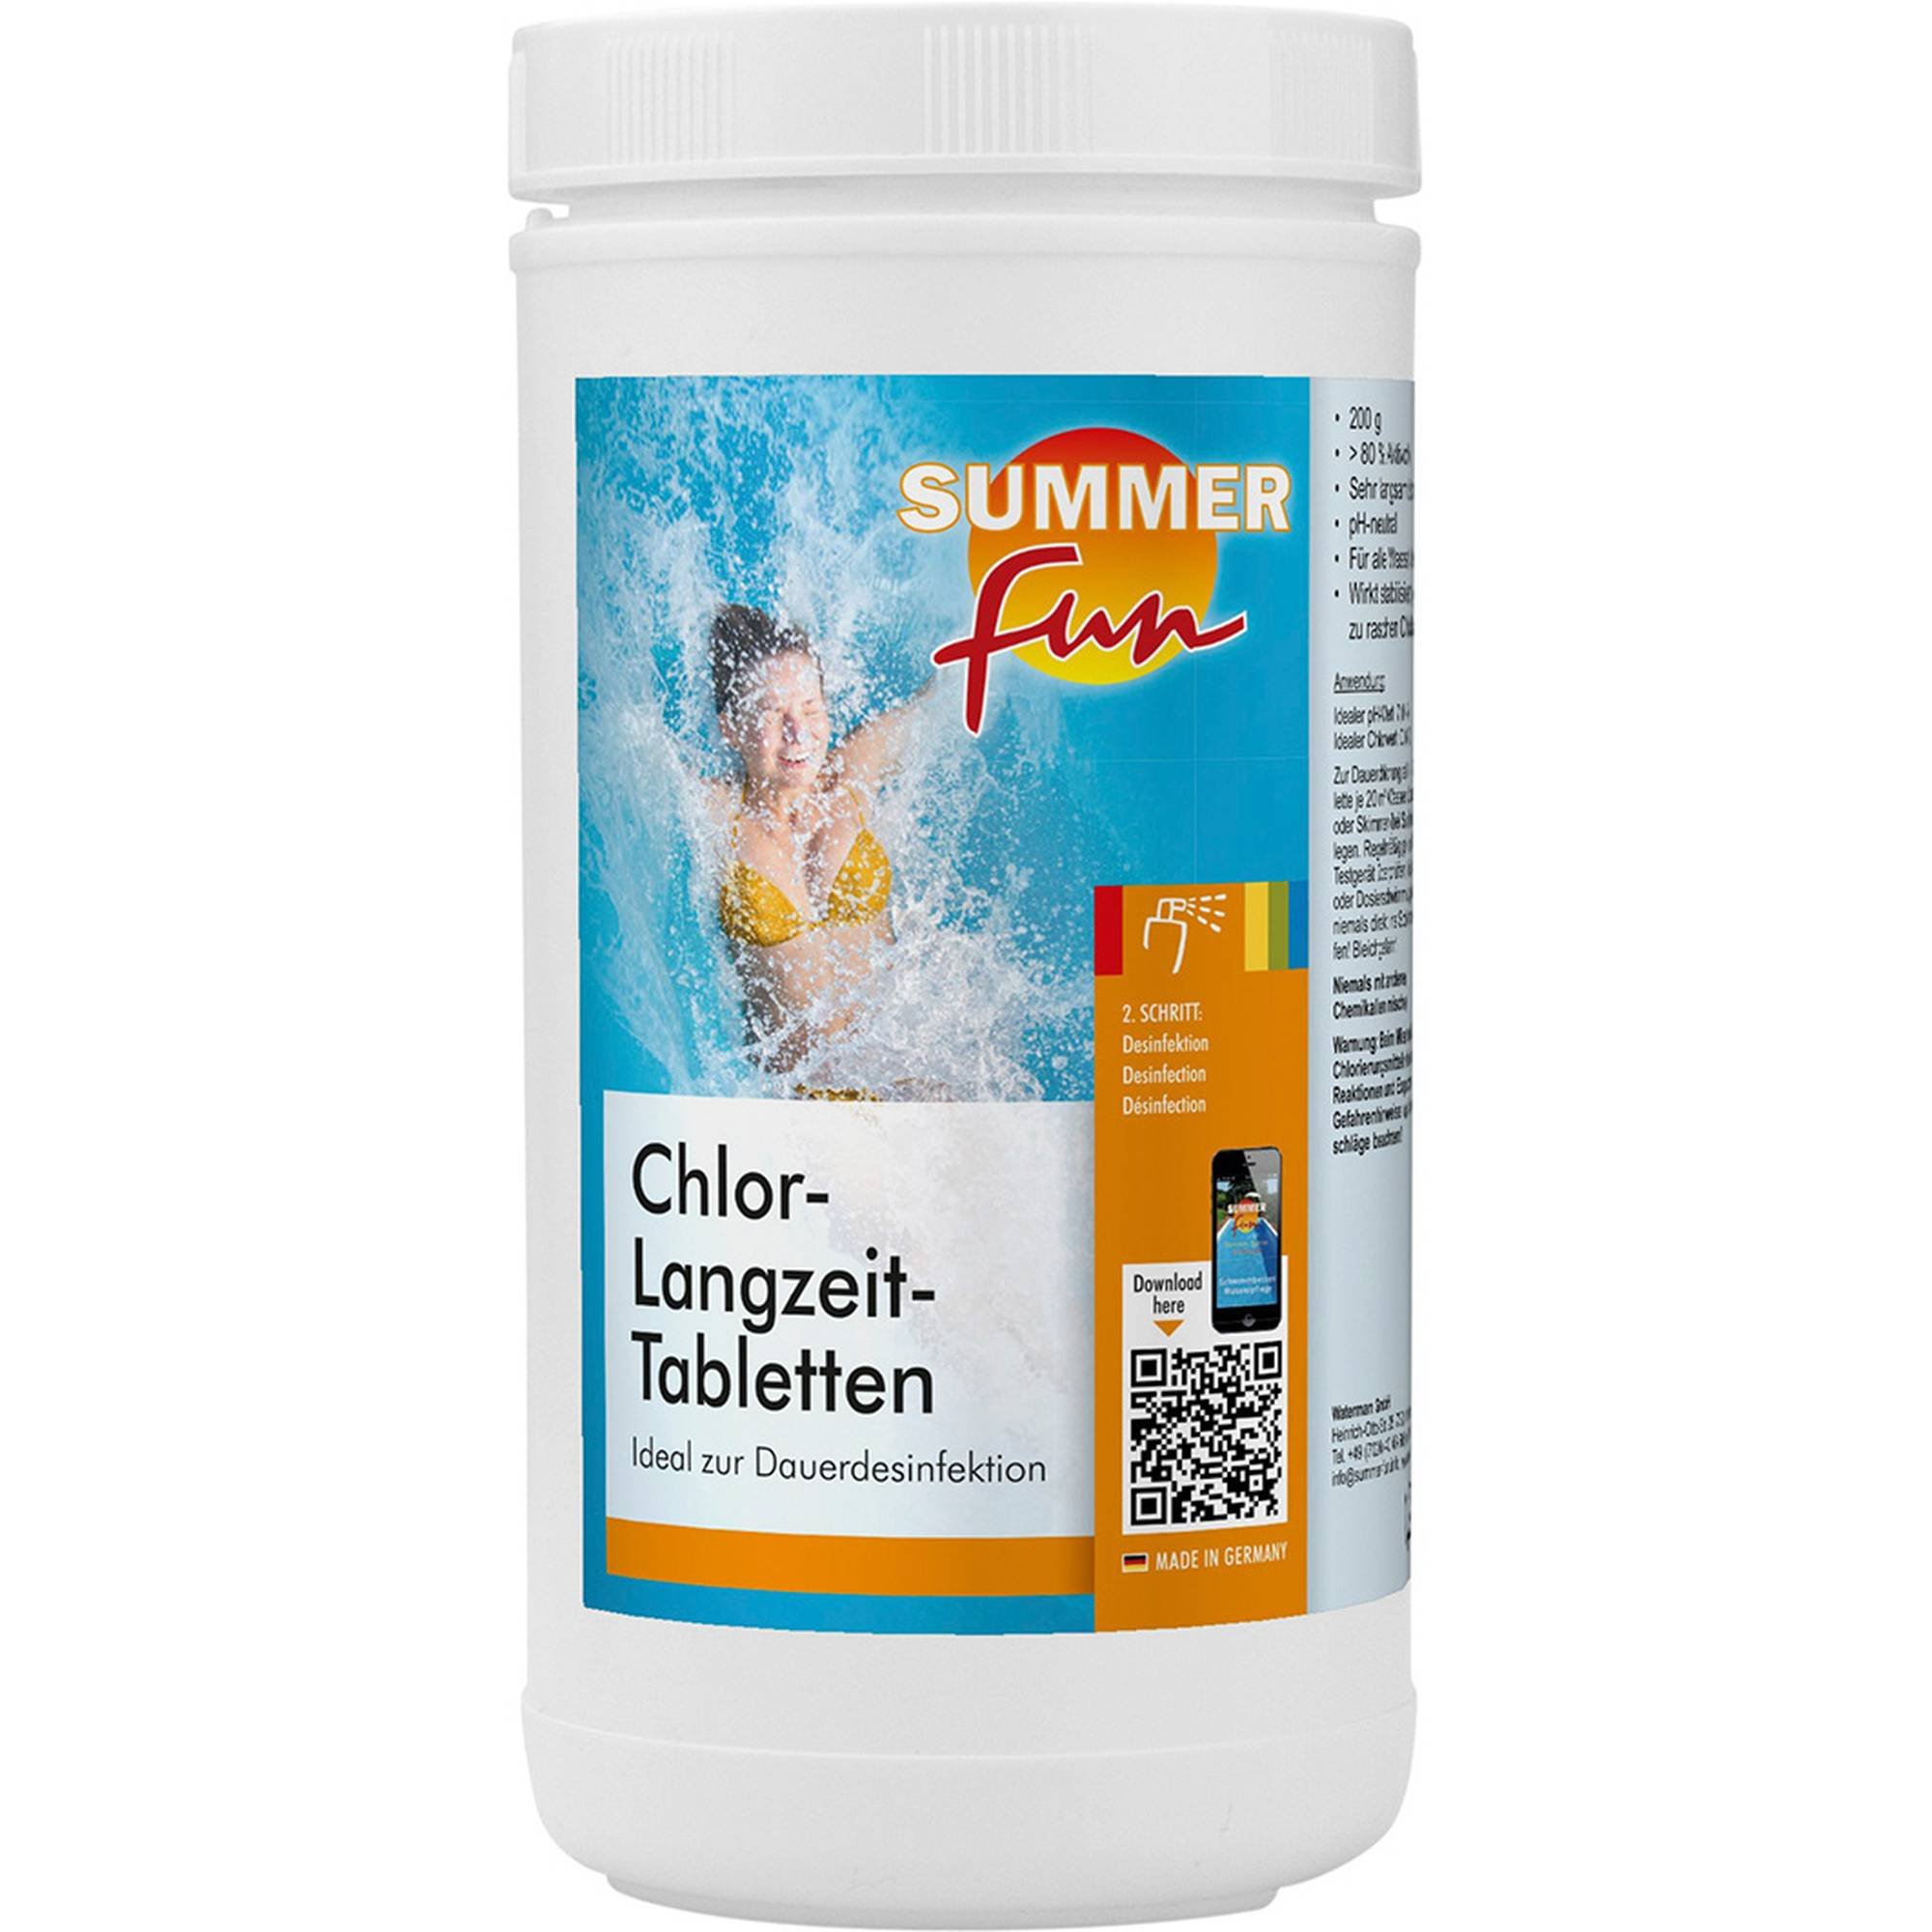 Summer Fun - Chlor-Langzeit Tabletten - 200g Tabletten, 1,2 kg